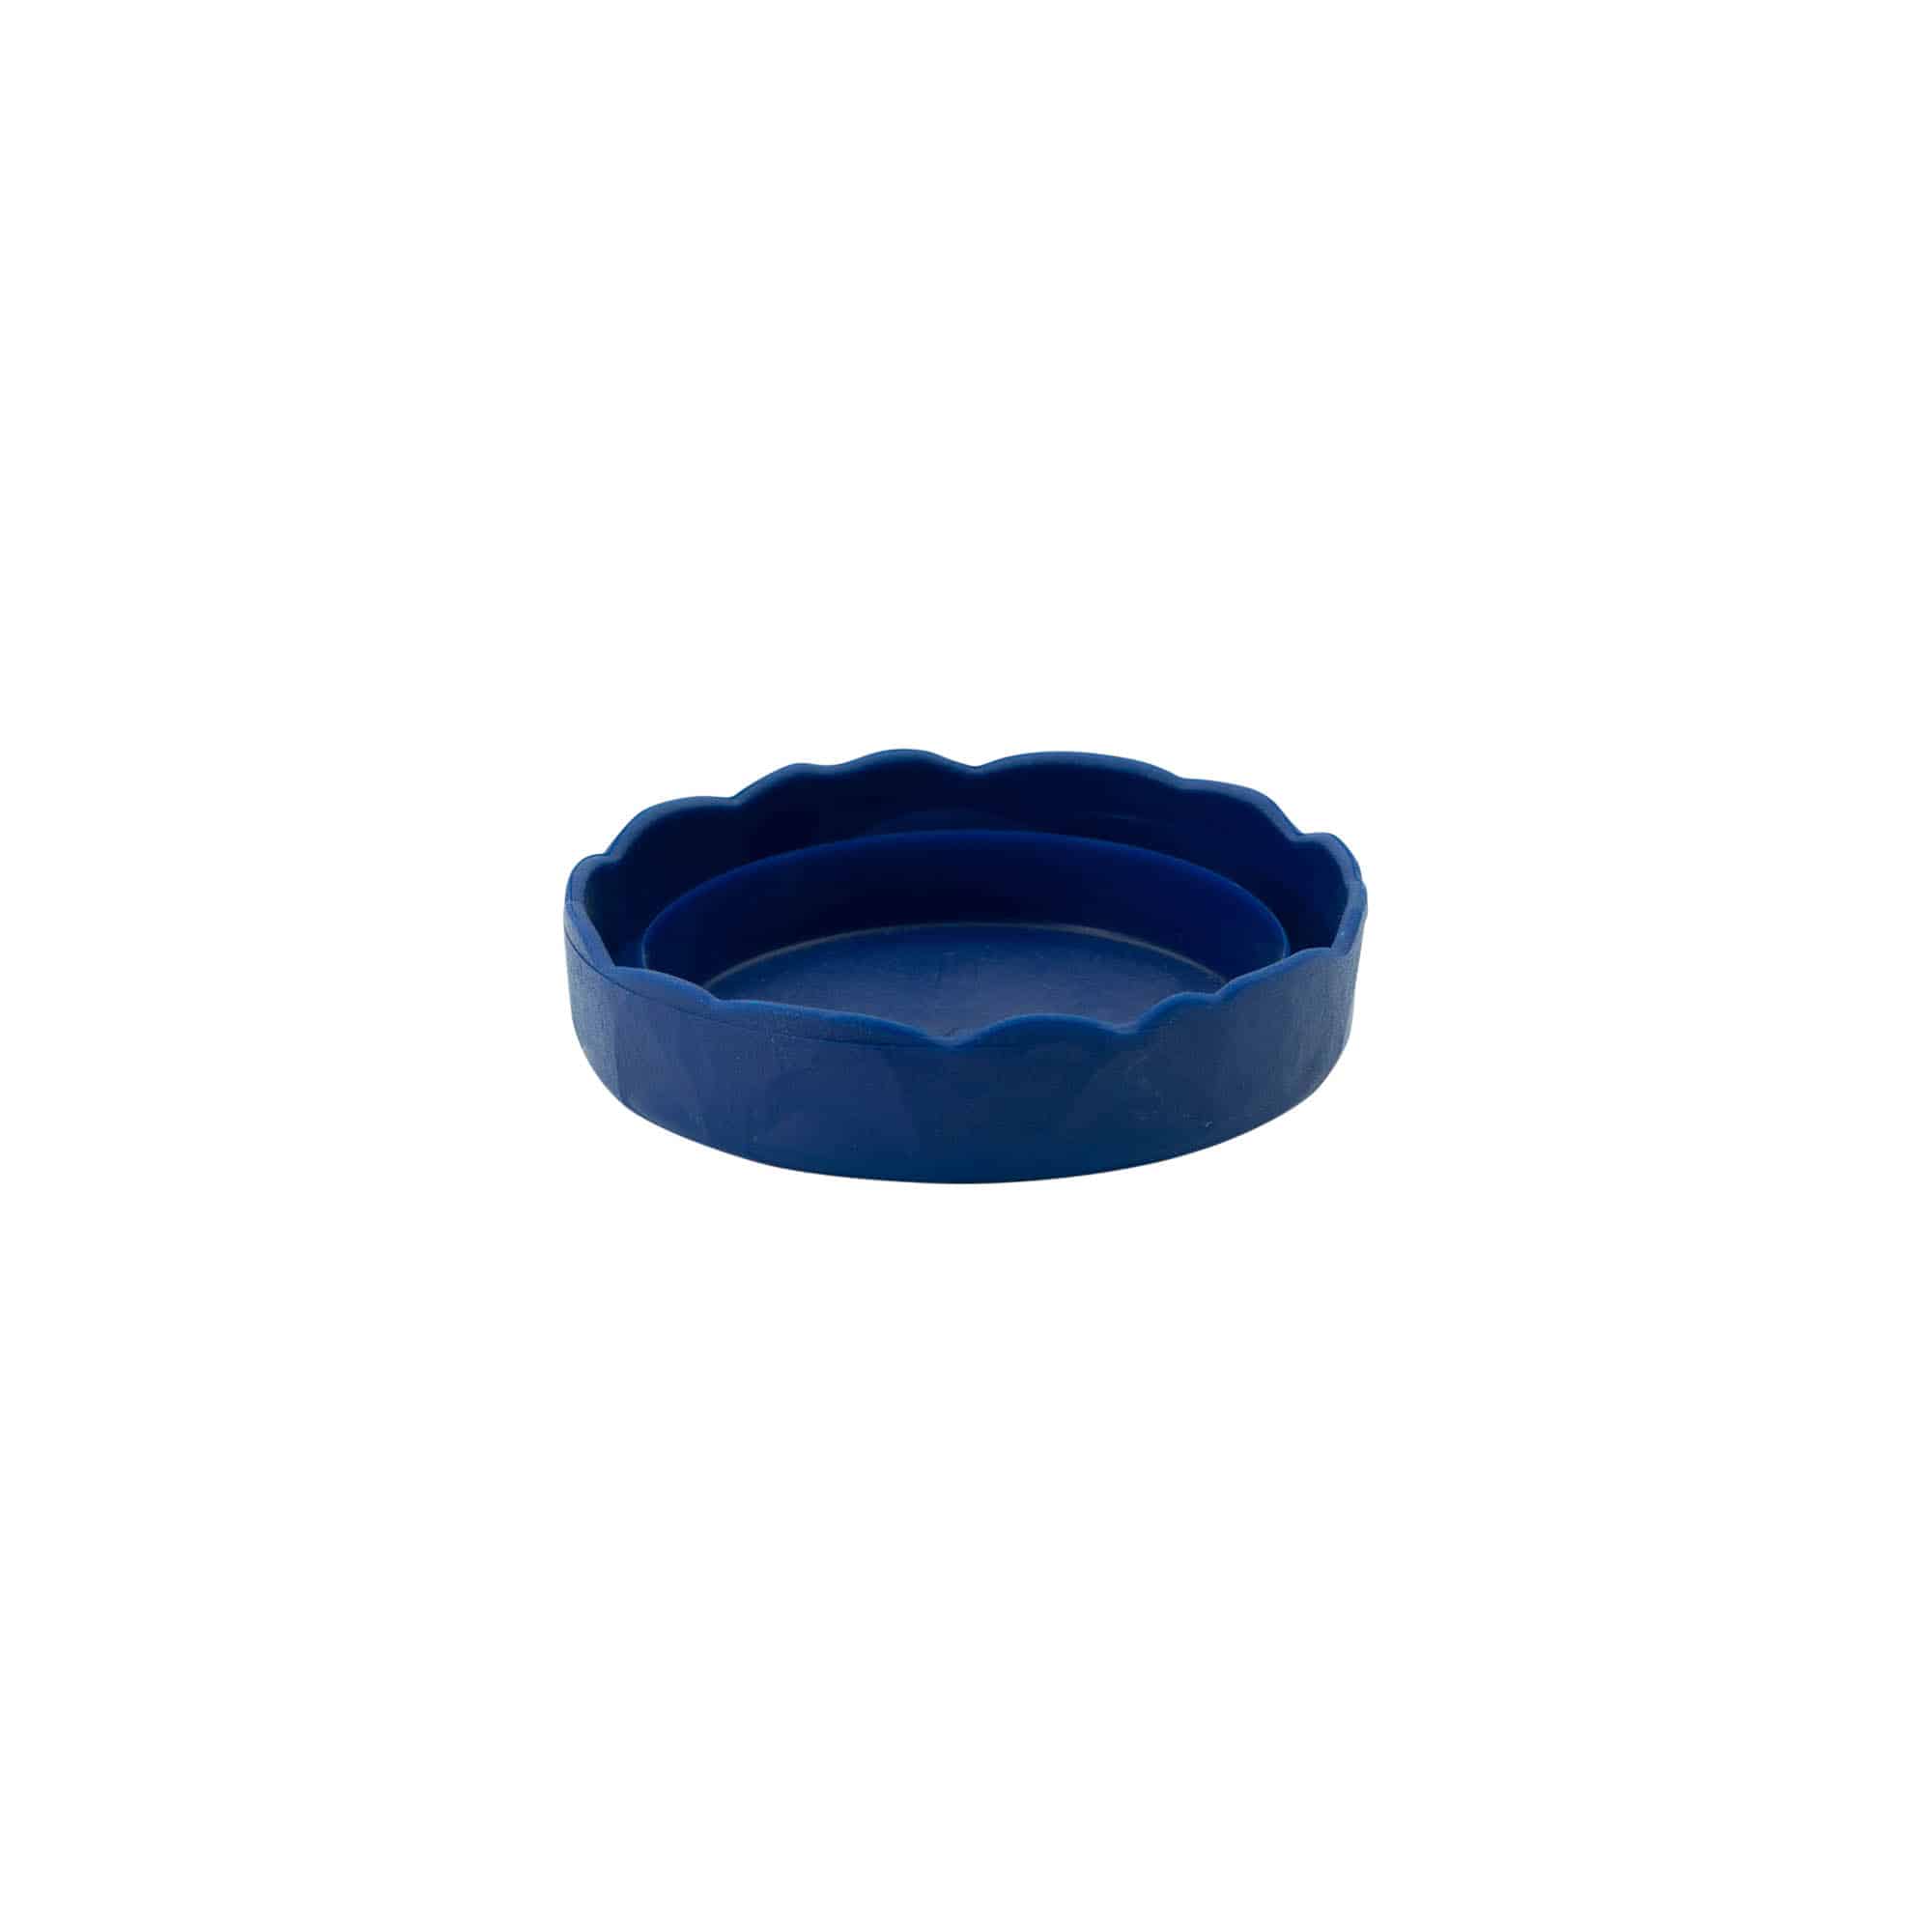 Stulpdeksel voor keramische pot met smalle hals, HDPE-kunststof, blauw